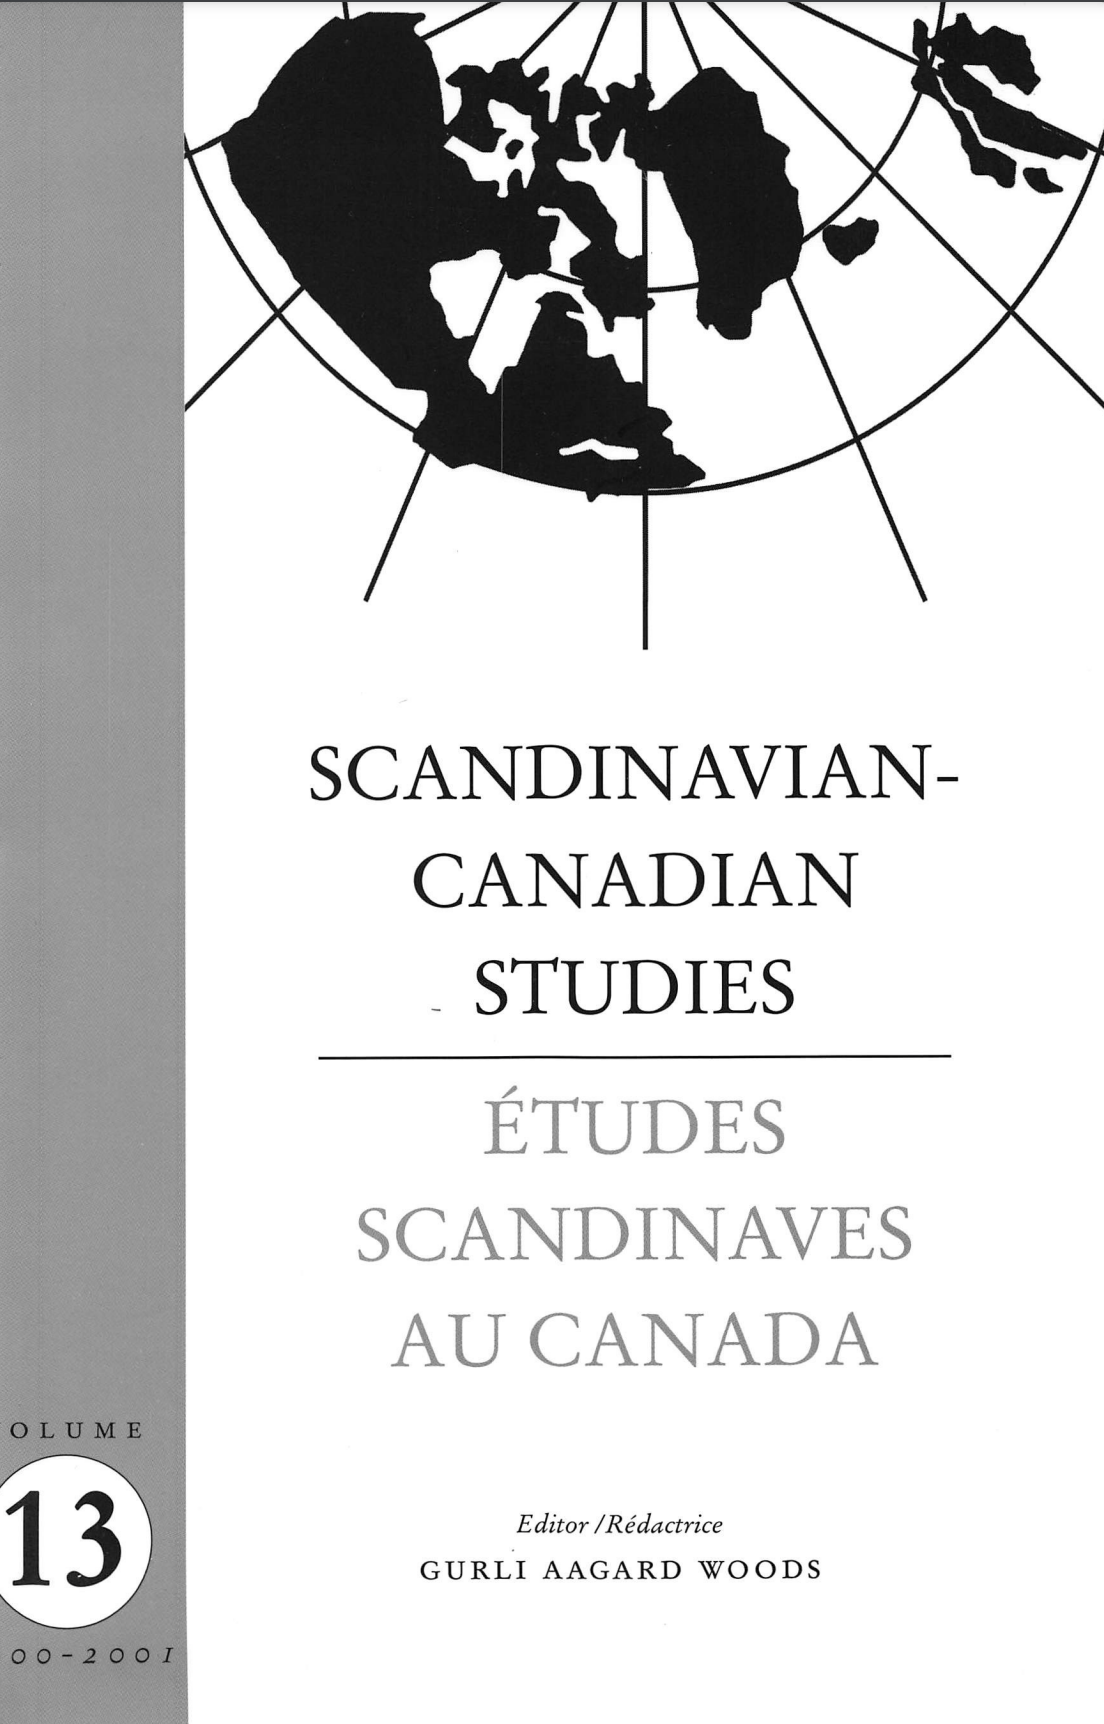 					View Vol. 13 (2001): SCANDINAVIAN-CANADIAN STUDIES/ÉTUDES SCANDINAVES AU CANADA Vol. 13 (2001)
				